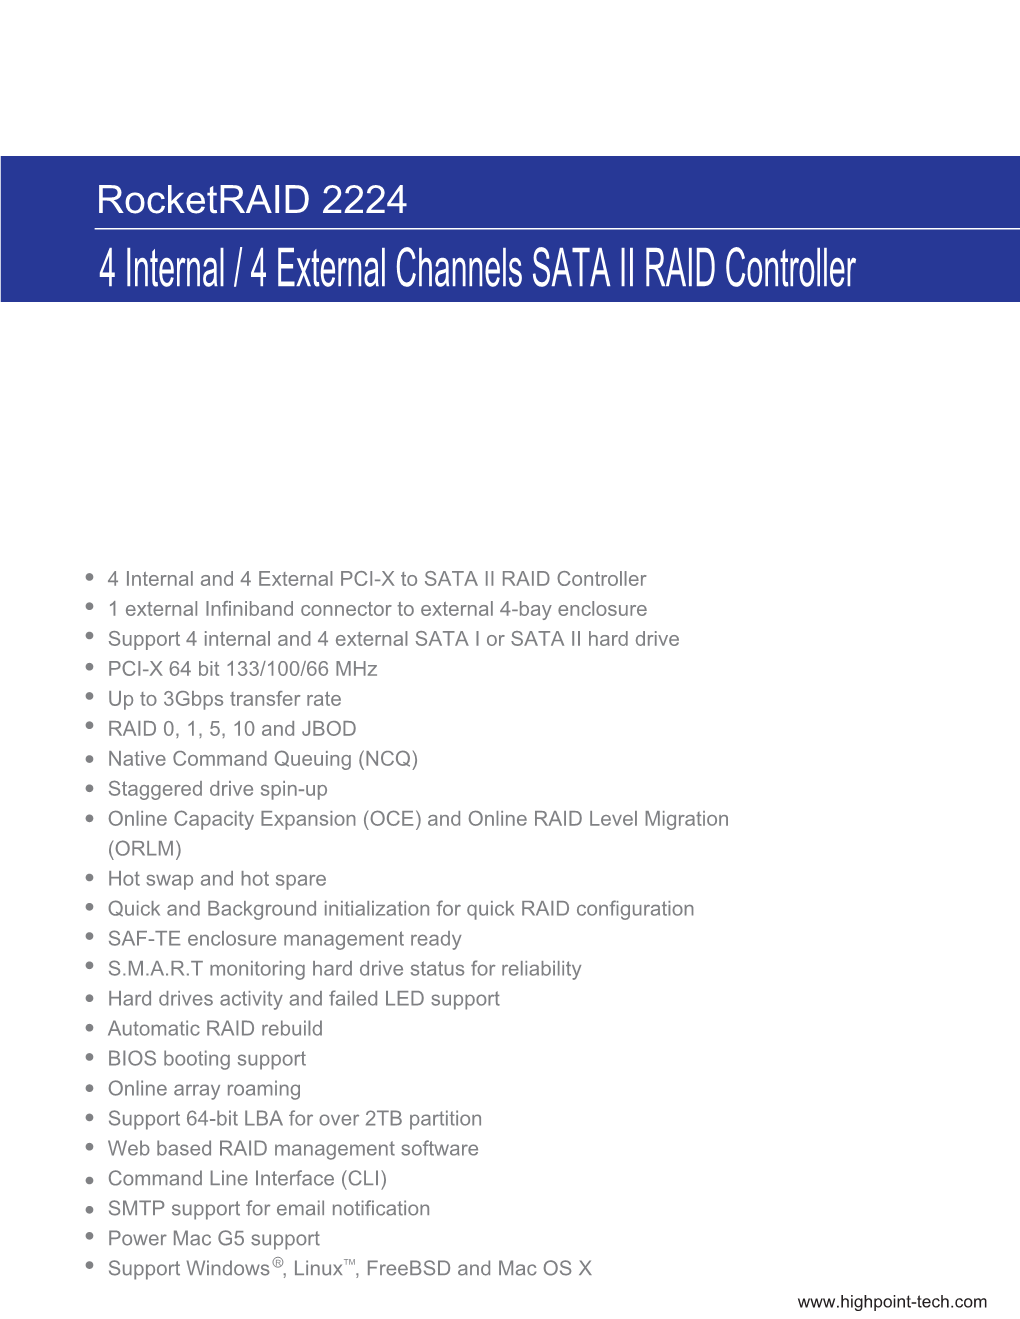 4 Internal / 4 External Channels SATA II RAID Controller